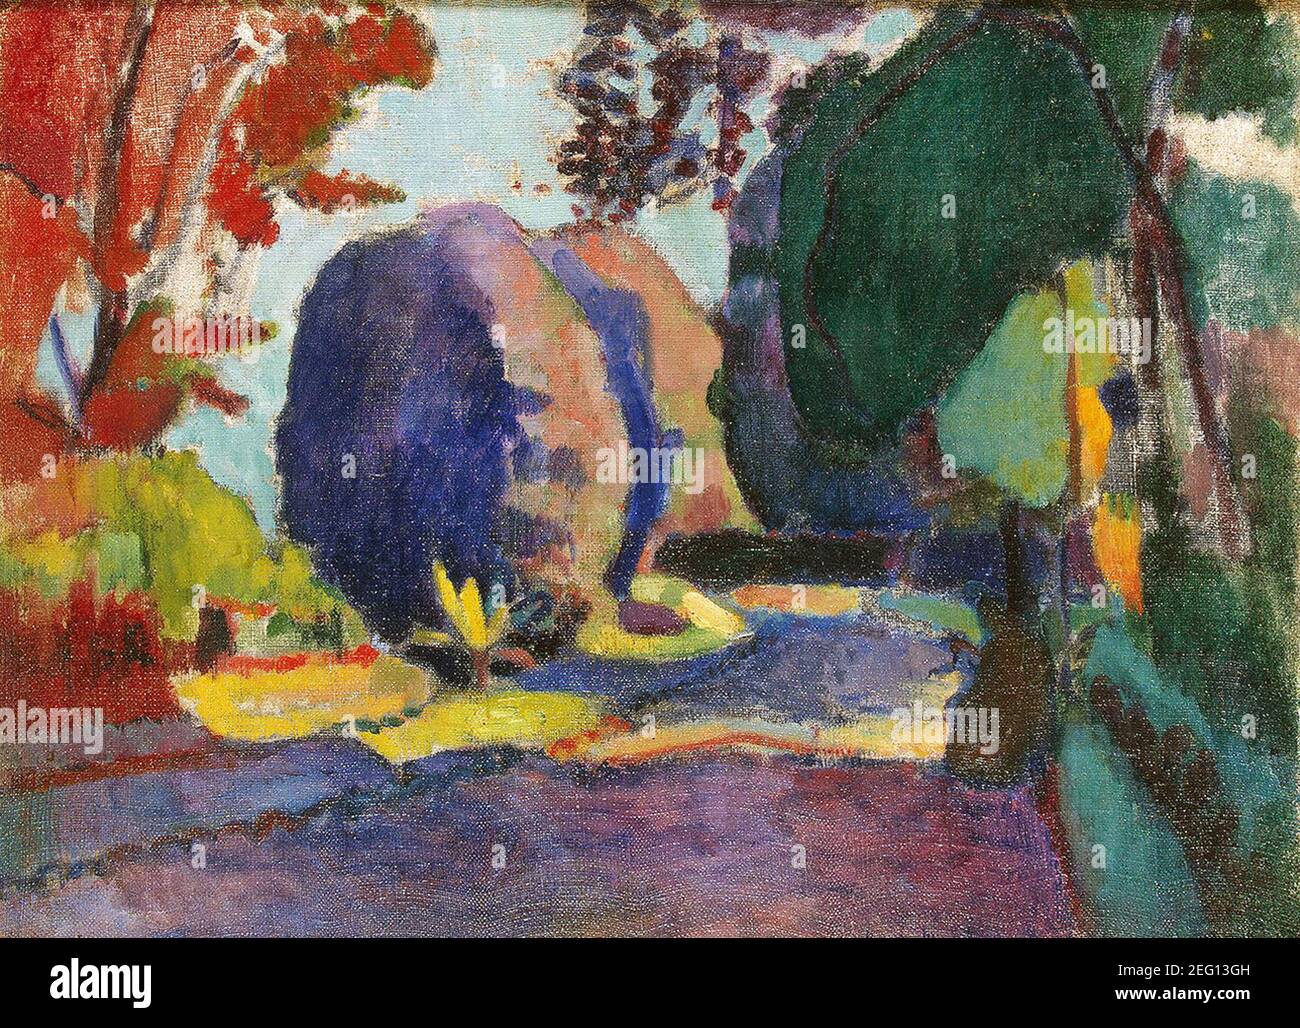 Les Jardins du Luxembourg par Henri Matisse 1901. Musée de l'Ermitage à Saint-Pétersbourg, Russie Banque D'Images